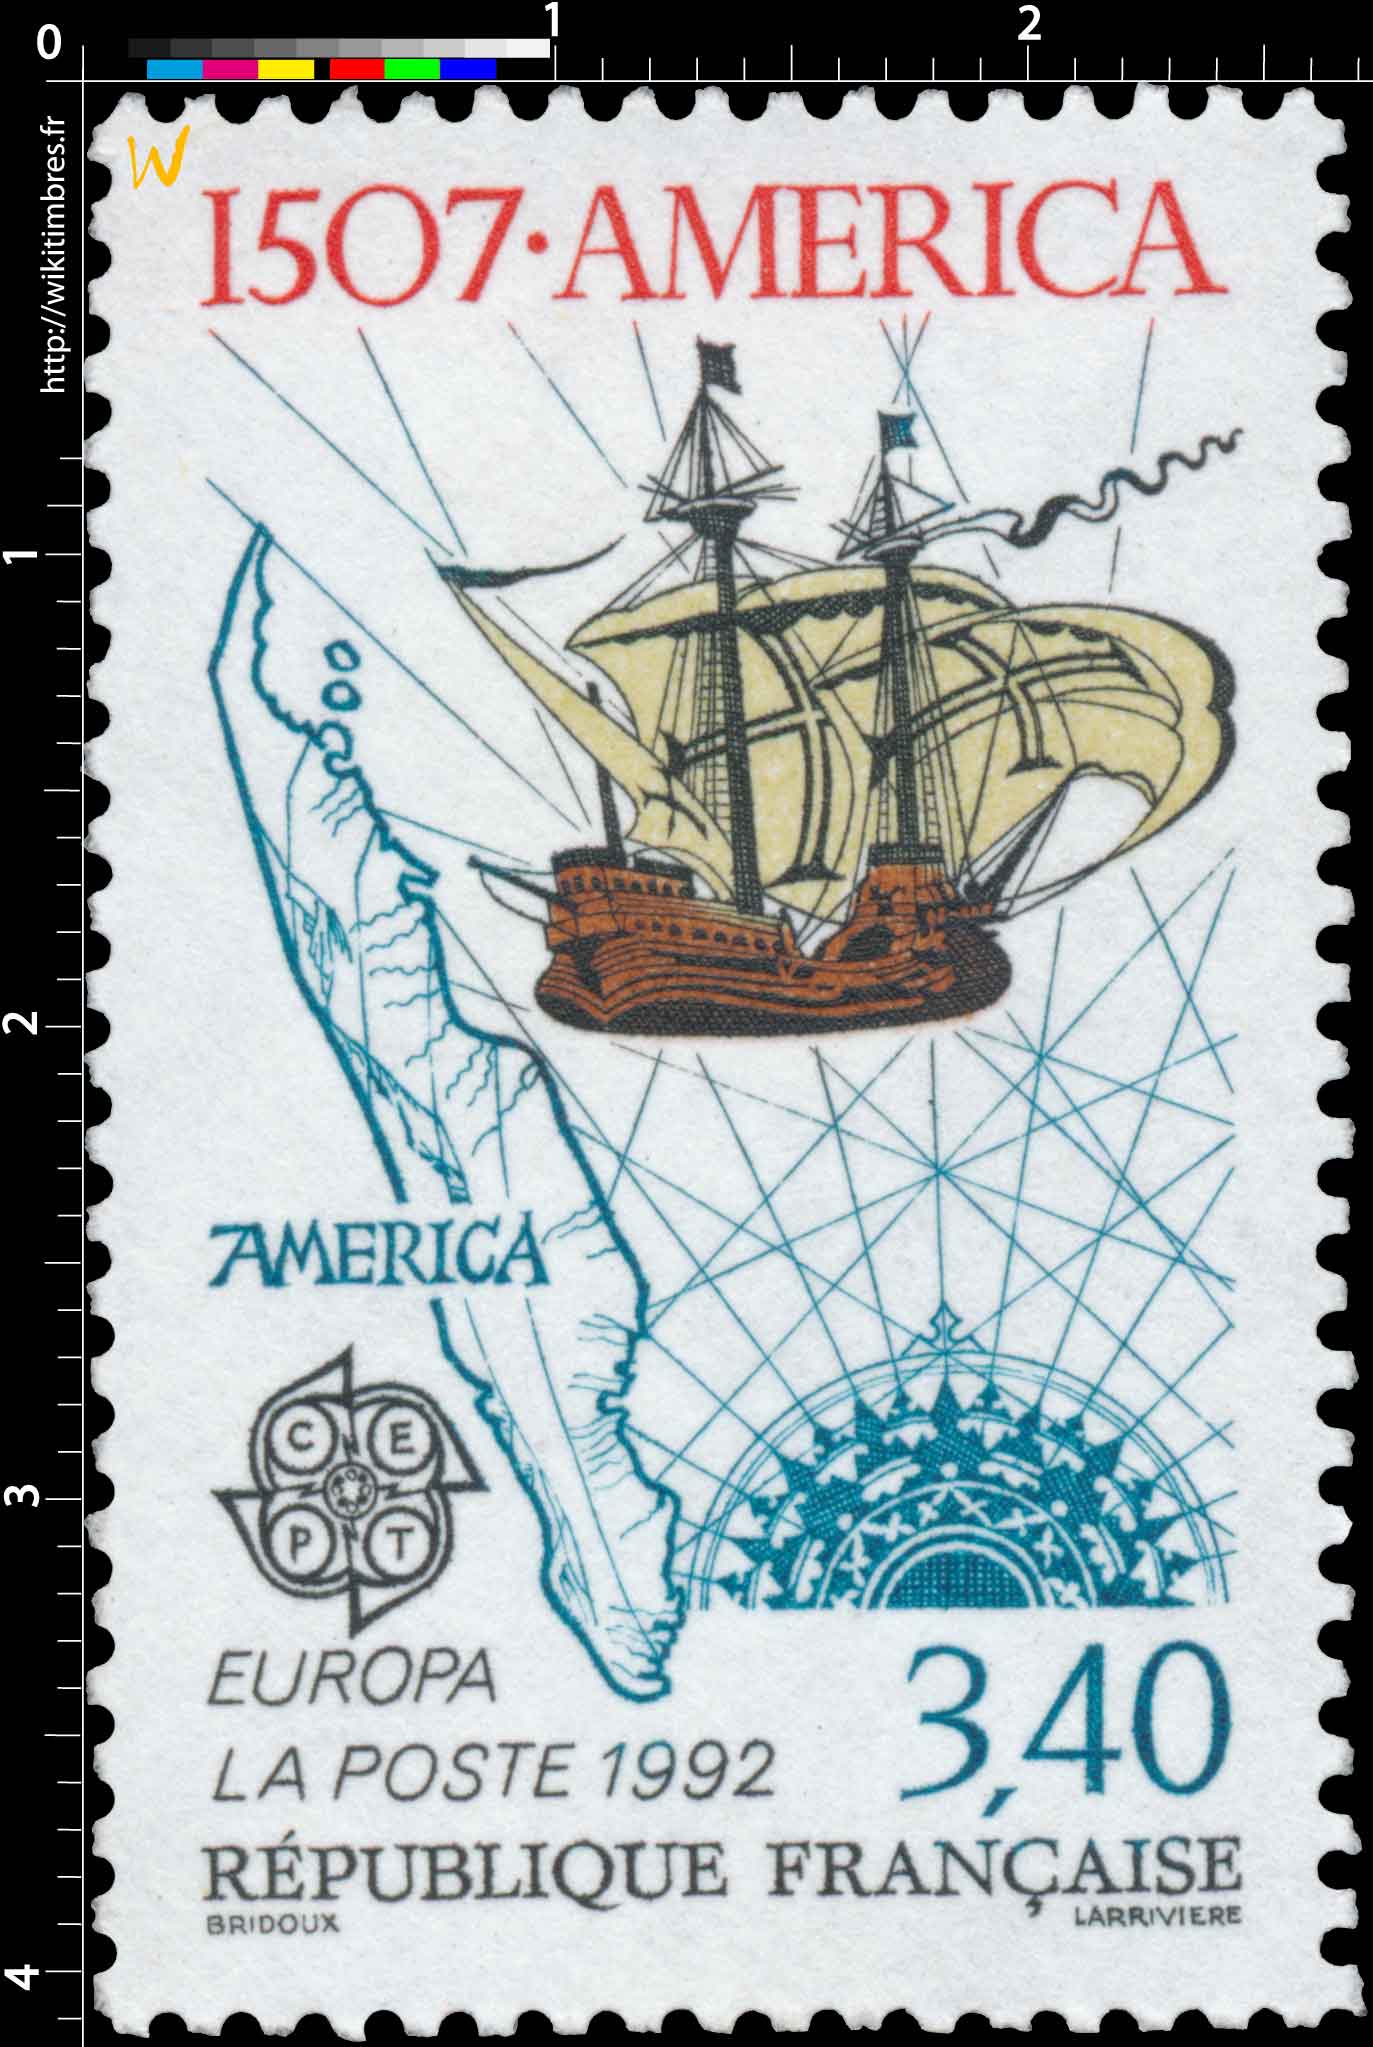 1992 EUROPA CEPT 1507 - AMERICA